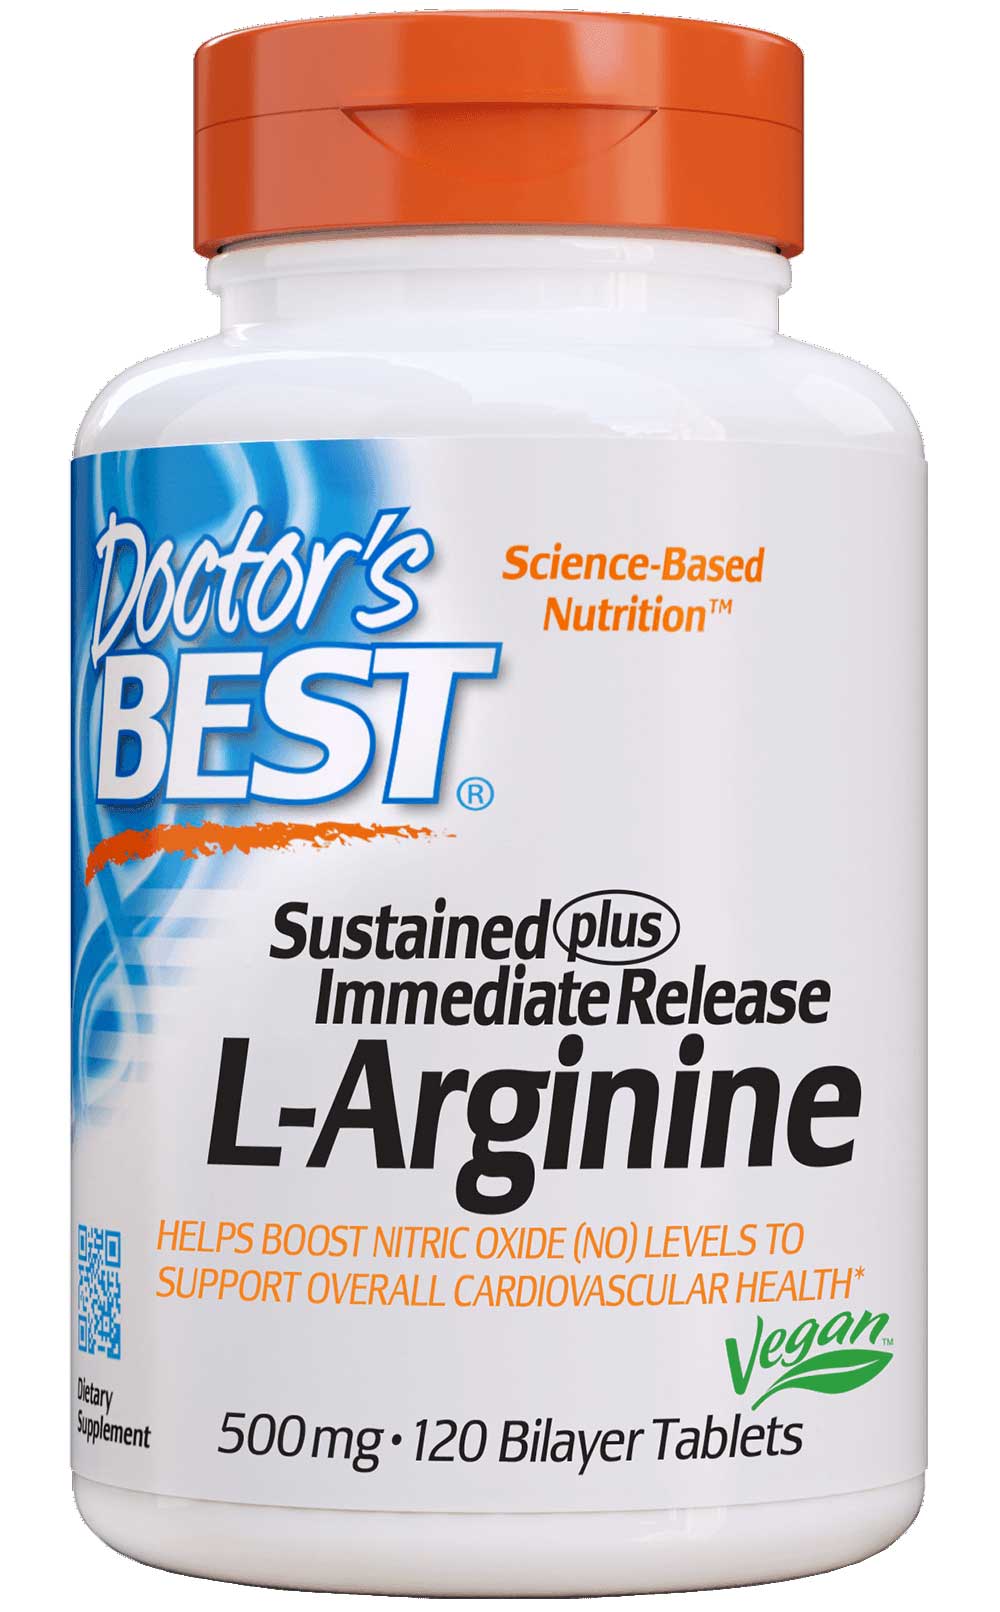 Doctor's Best Sustained plus Immediate Release L-Arginine